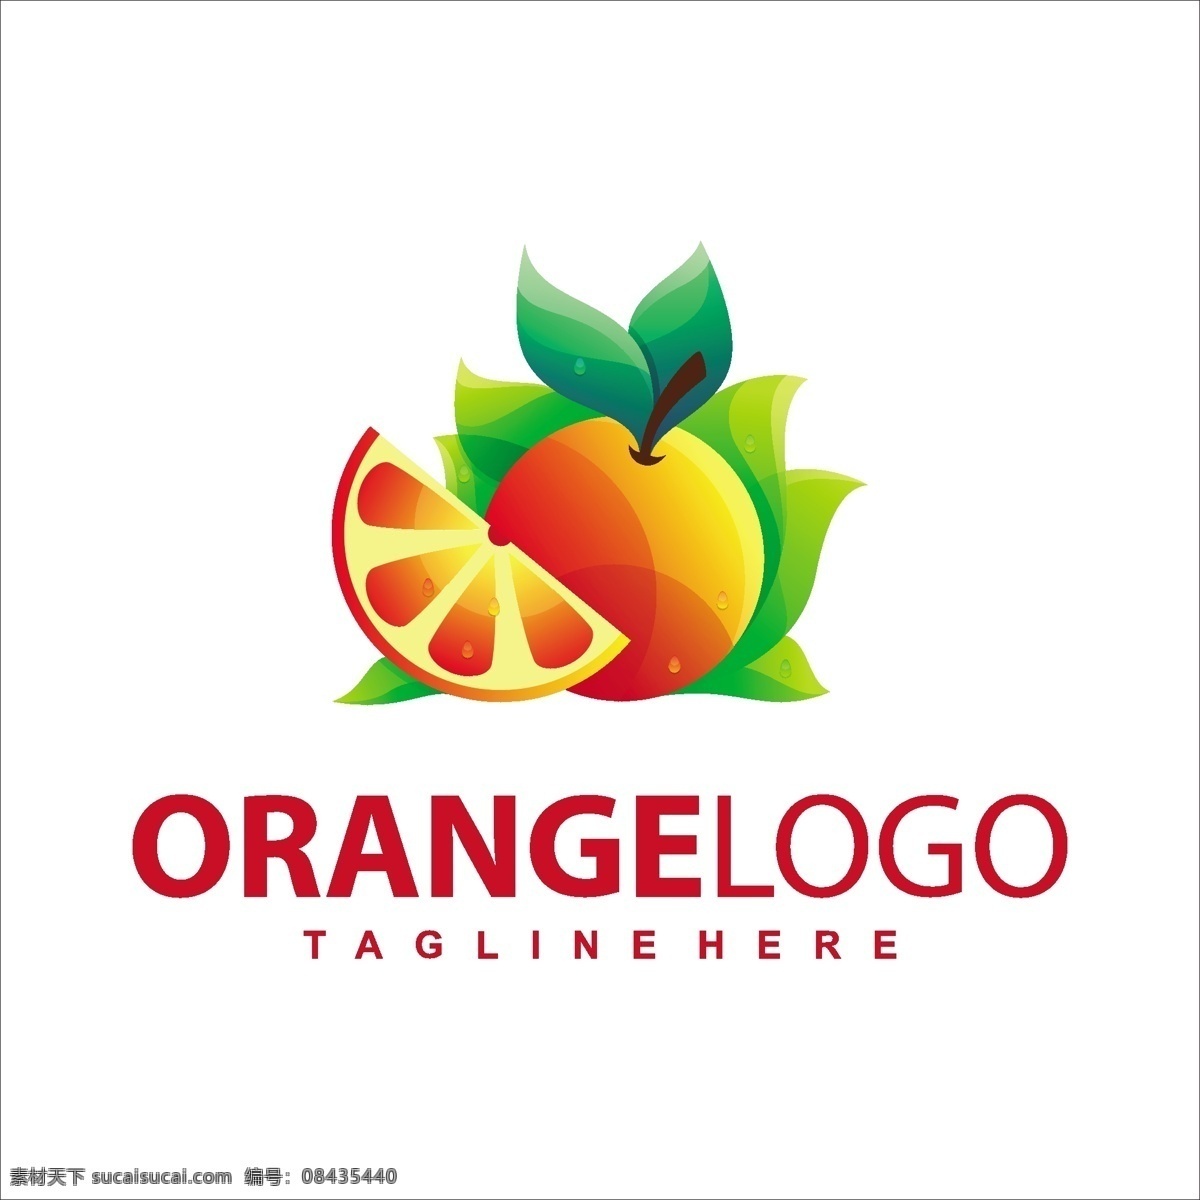 水果标志 水果logo 水果店 logo 水果图标 企业标识 星星标志 星星logo 标志设计 商标设计 企业logo 公司logo 行业标志 标志图标 图标 icon logo设计